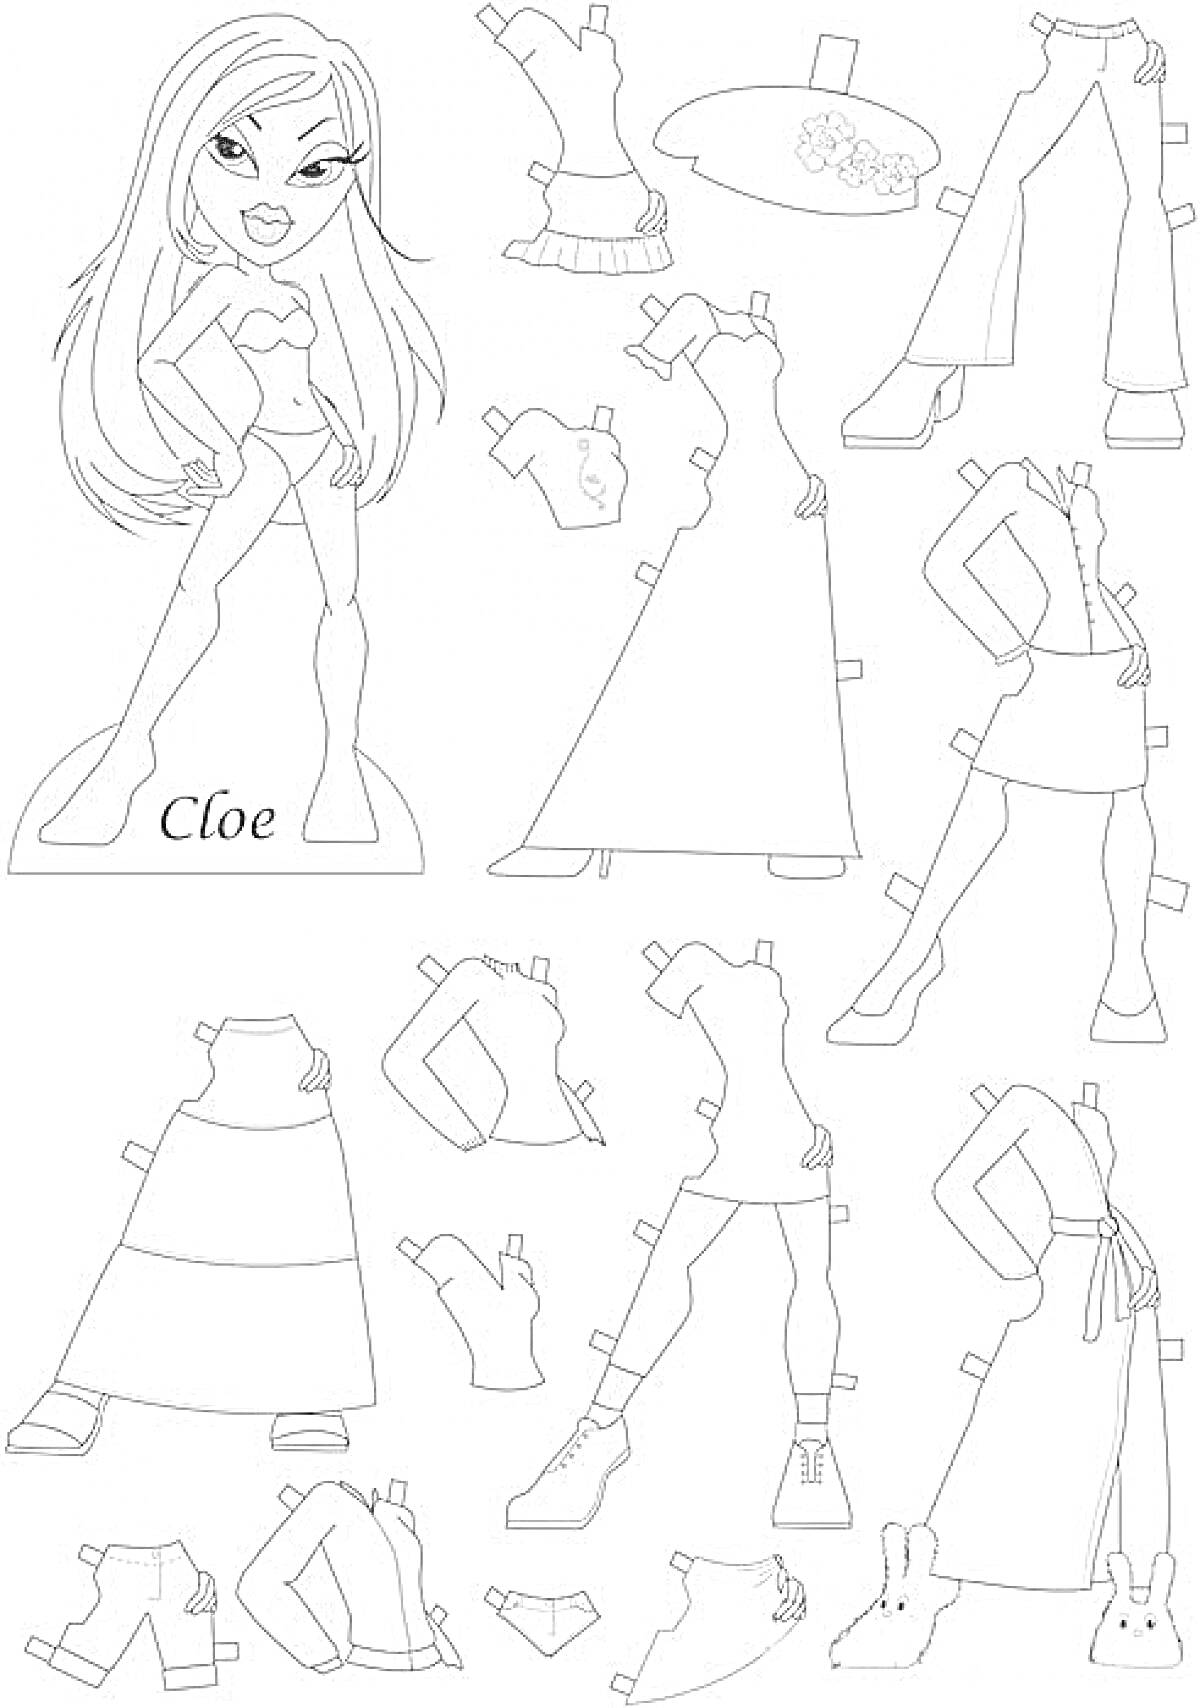 Бумажная кукла Клоэ с гардеробом, включающим вечернее платье, футболку, шорты, обувь, аксессуары